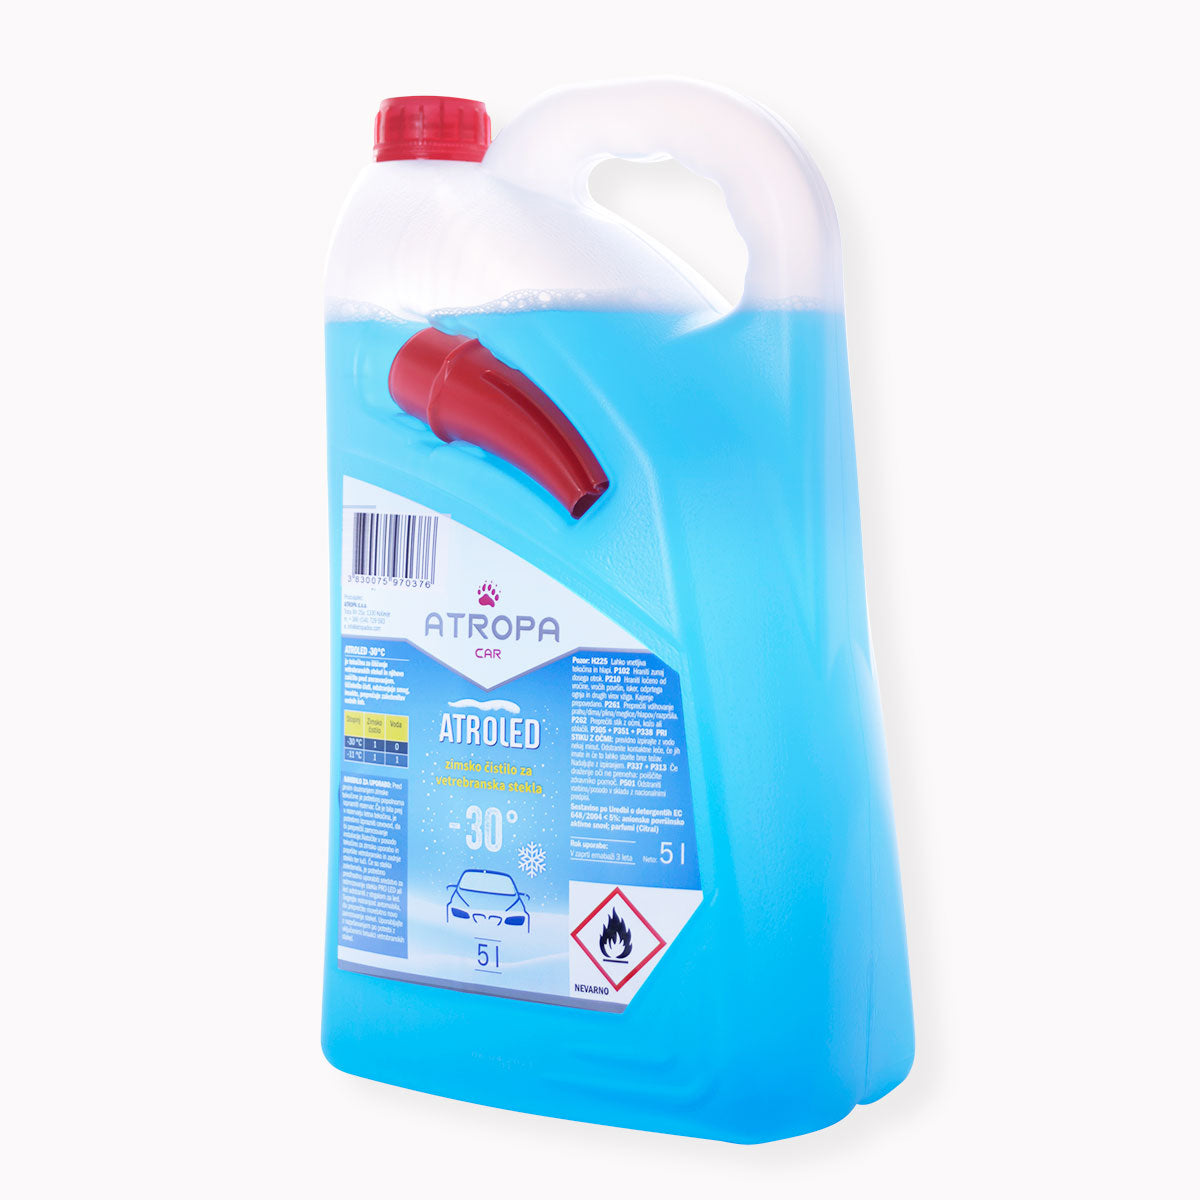 ATROLED zimska tekočina za vetrobransko steklo 5l do -30 °C modre barve v praktični embalaži. Zimska tekočina za vetrobransko steklo je proizvedena v Sloveniji.